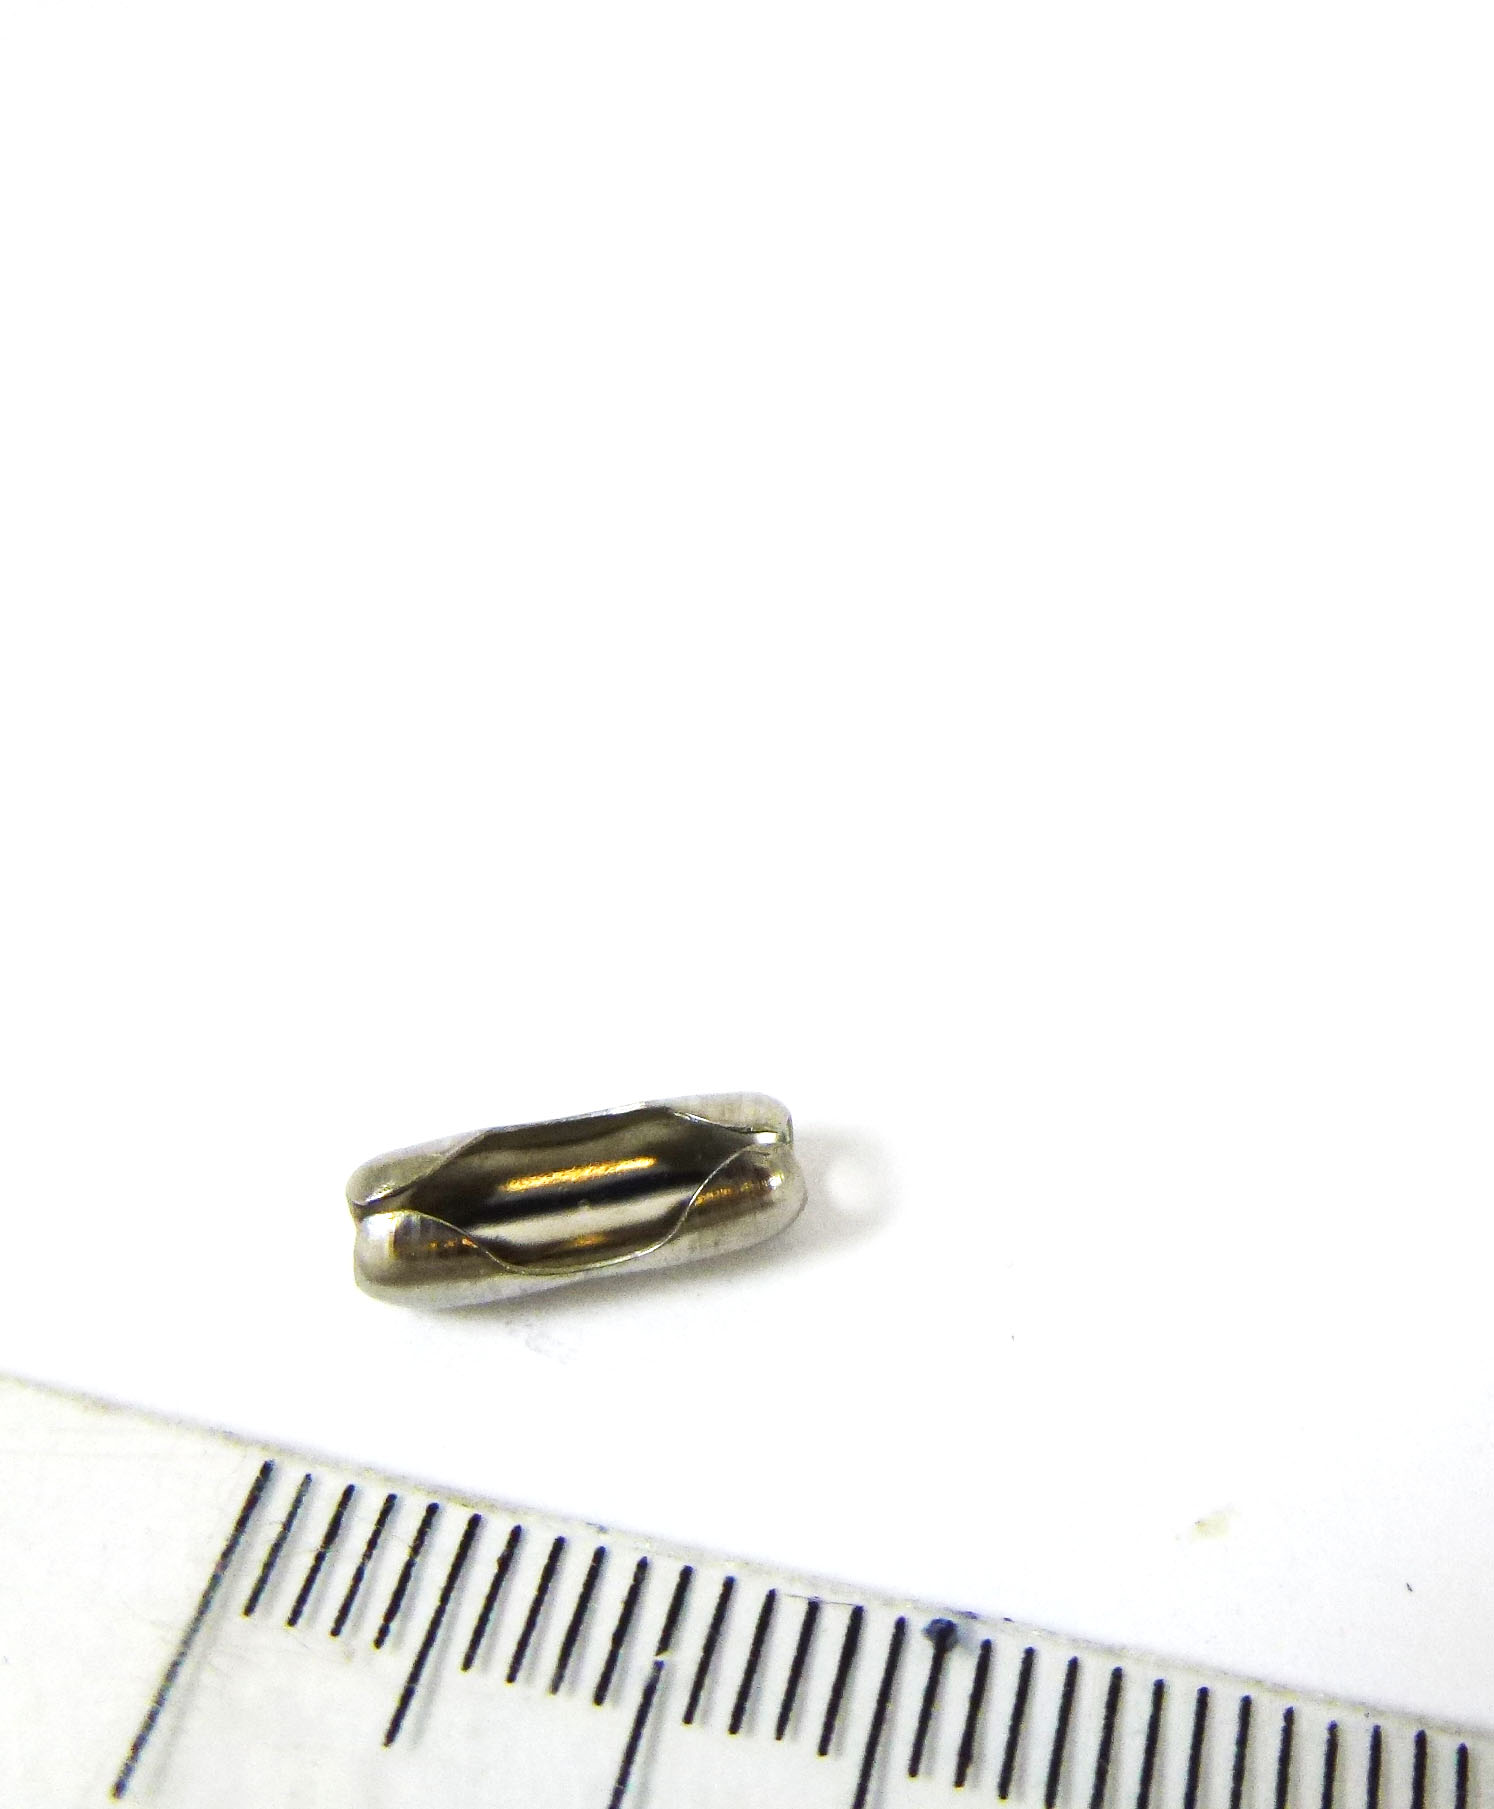 3.2mm共用不銹鋼珠鍊扣